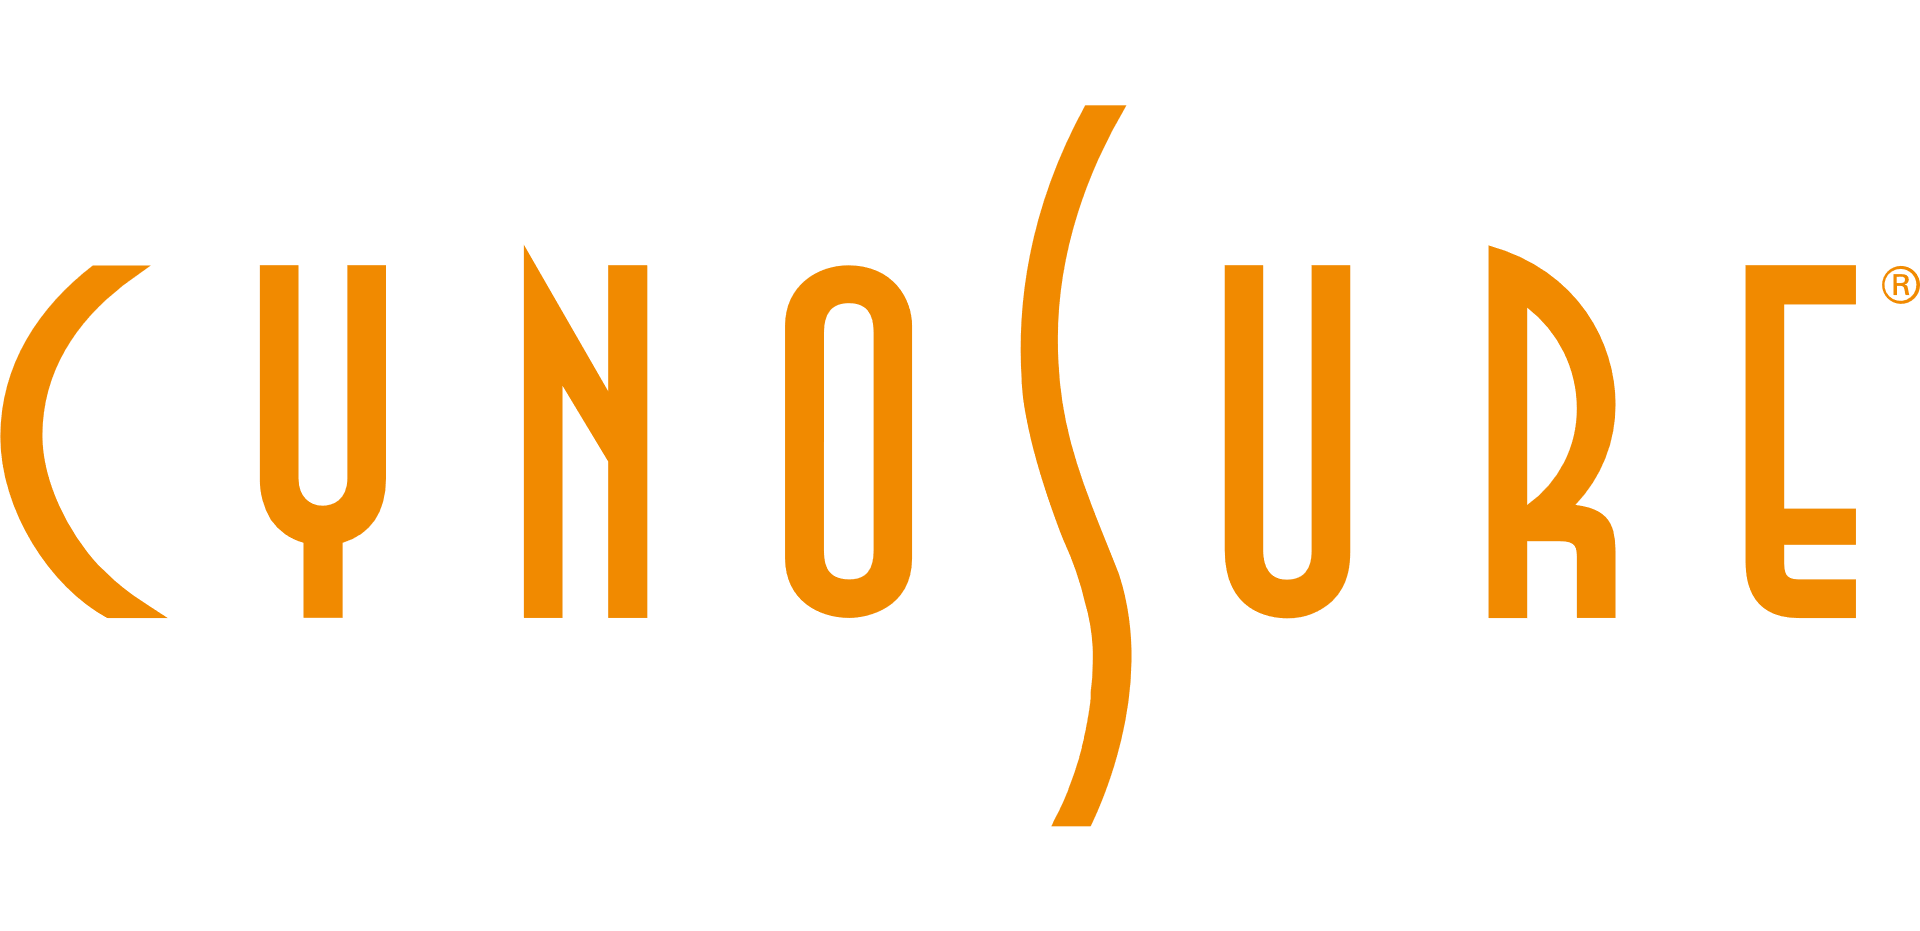 Cynosure LLC